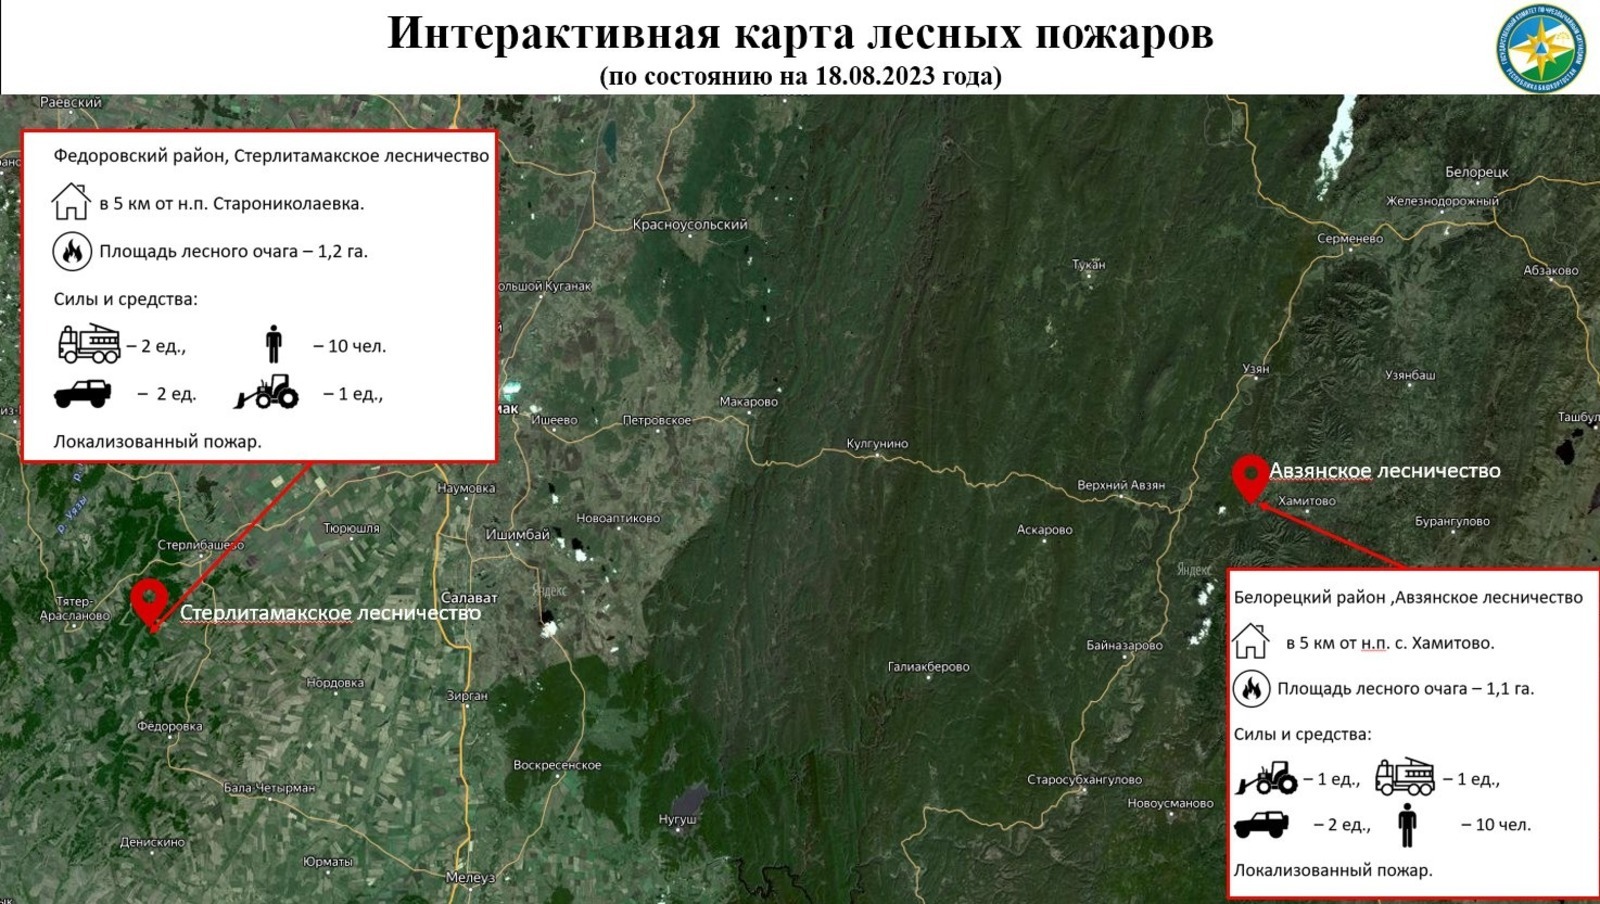 На территории Башкирии за последние сутки зарегистрировано три очага лесных пожаров